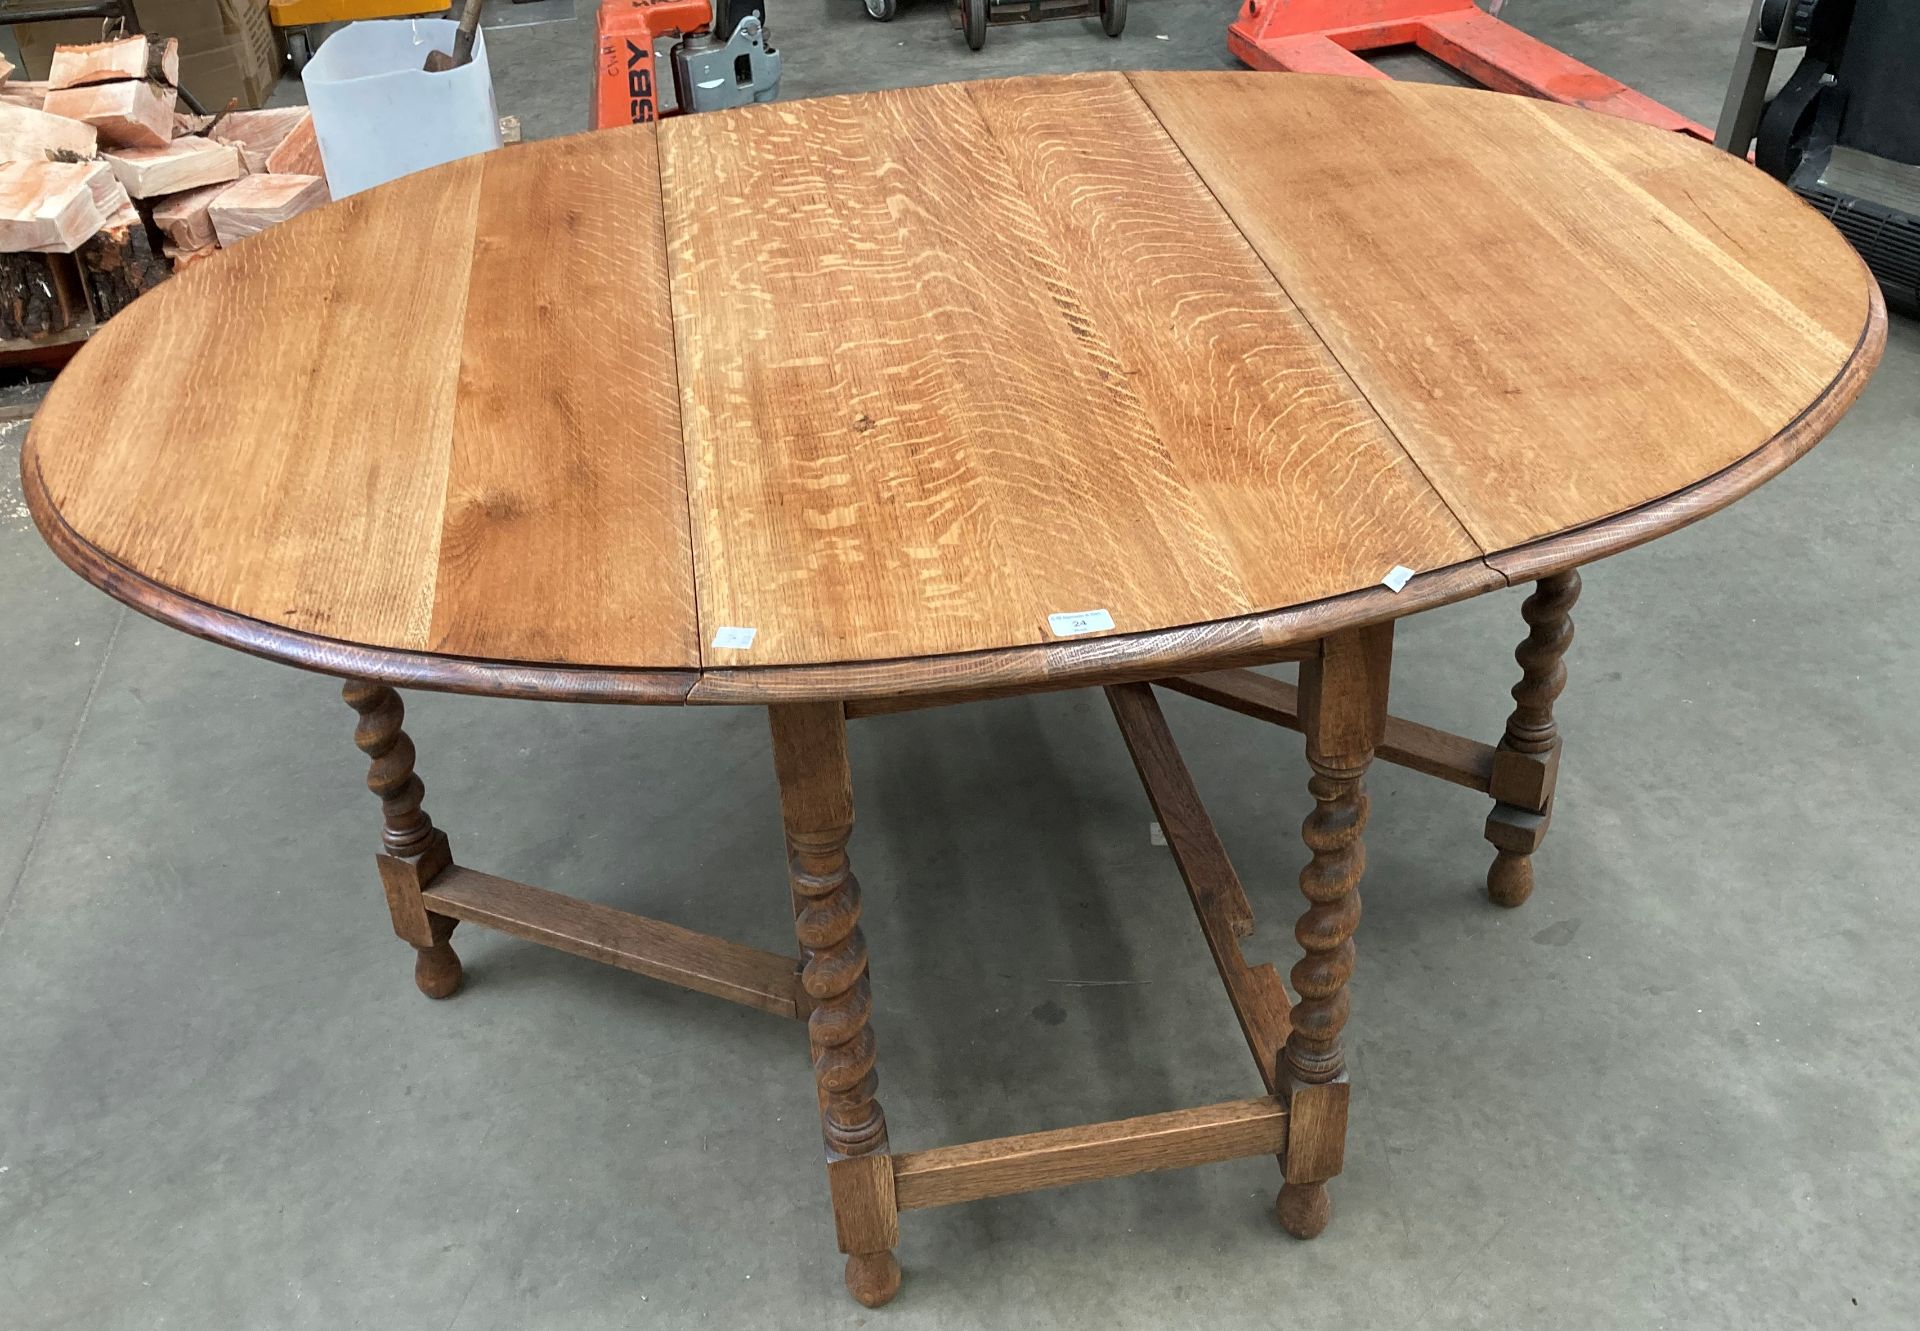 An oak drop leaf oval dining table with barley twist legs 150cm x 106cm